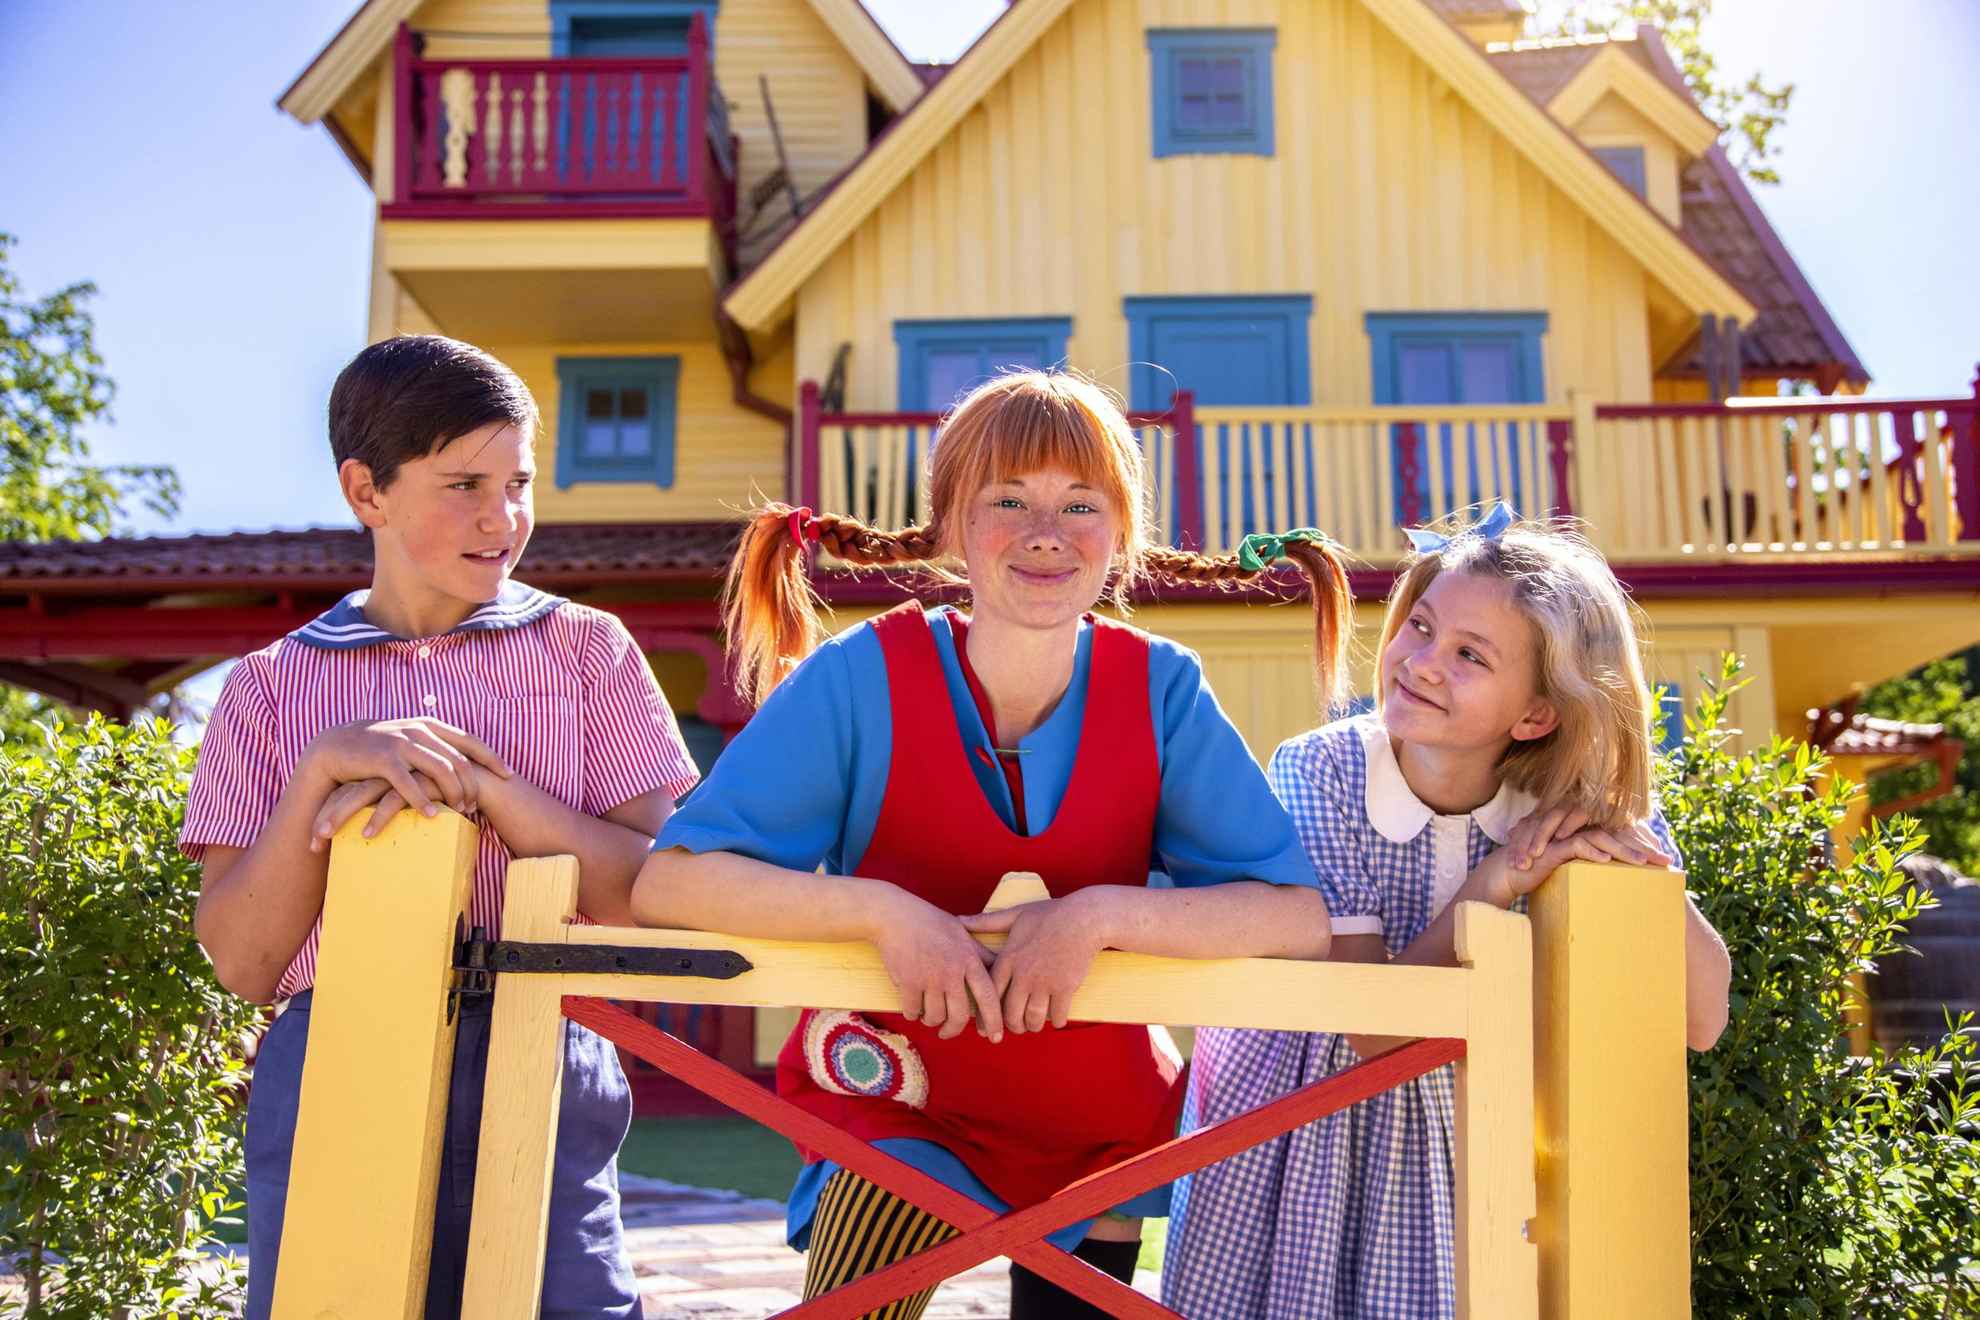 Acteurs verkleed als de personages Tommy, Pippi en Annika staan bij een gele poort voor een geel huis (Villa Villekulla).